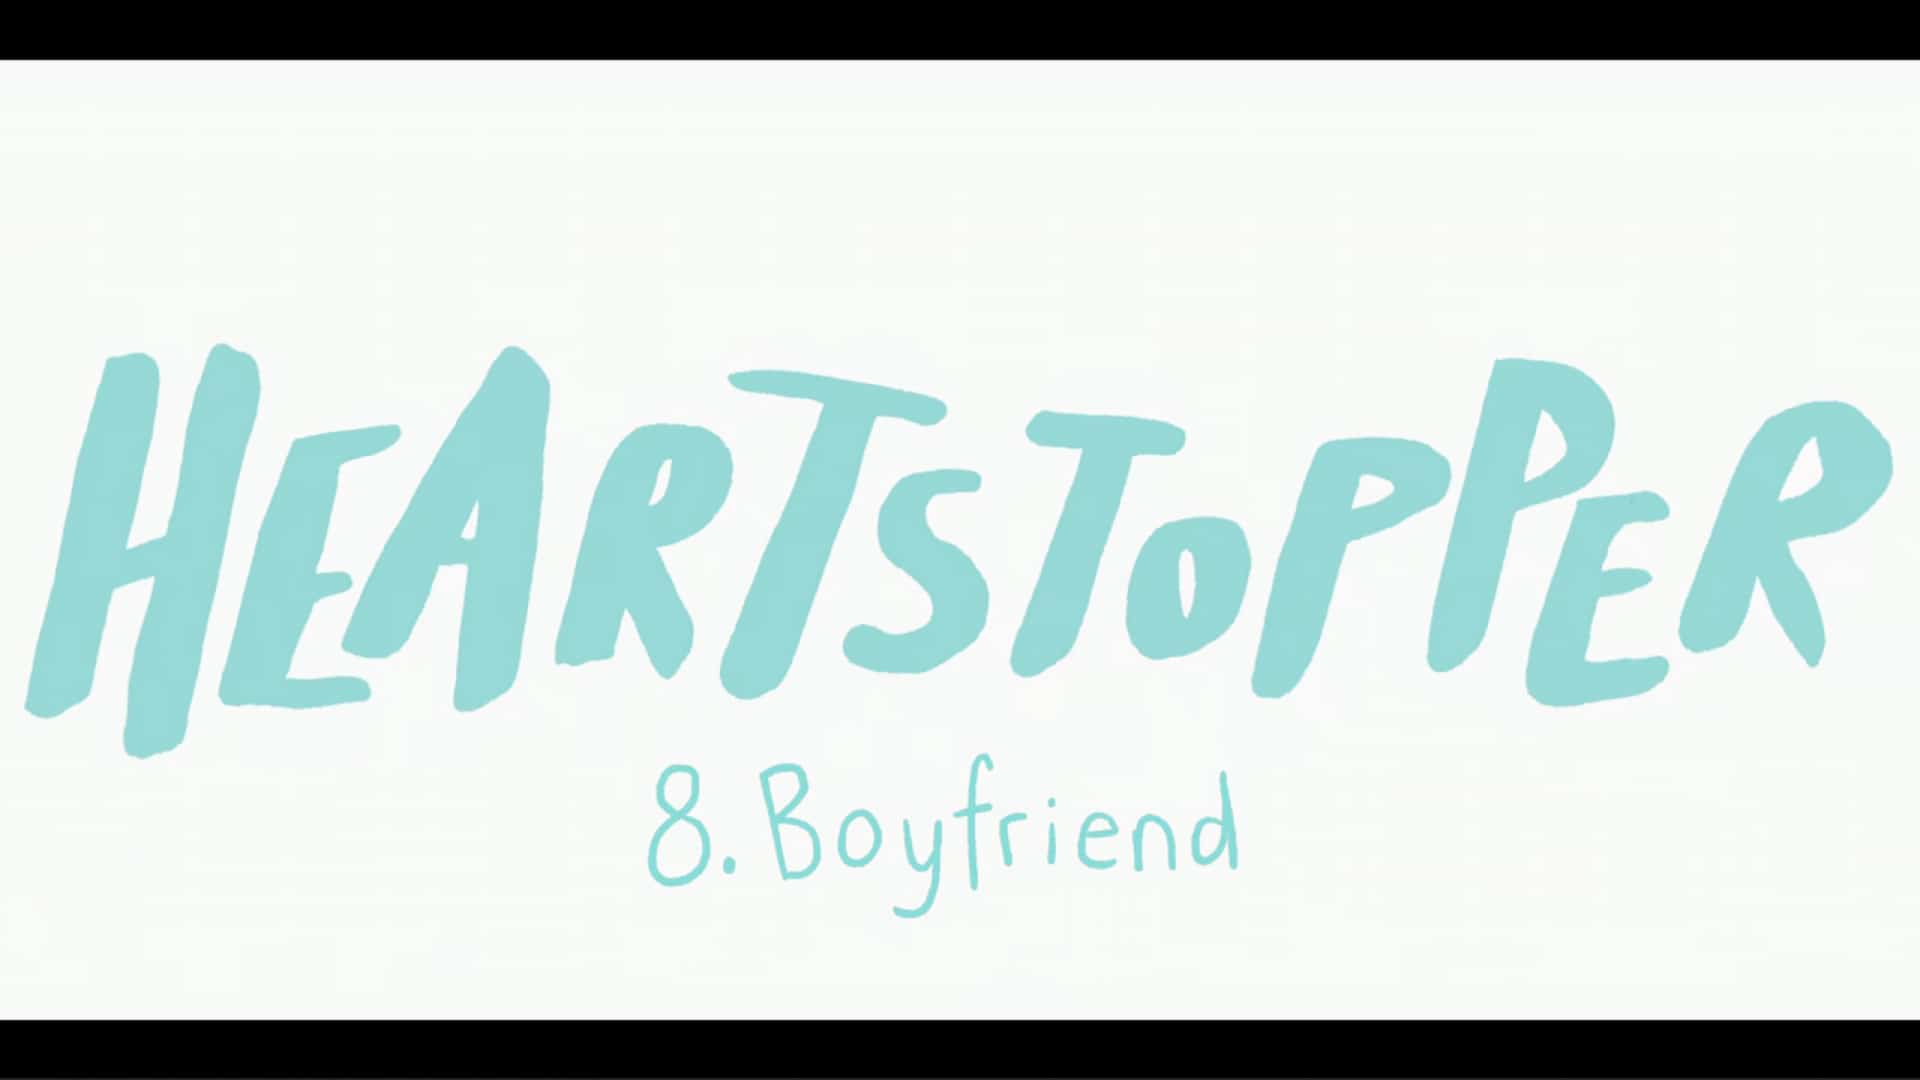 Title Card - Heartstopper Season 1 Episode 8 Boyfriend [Finale]